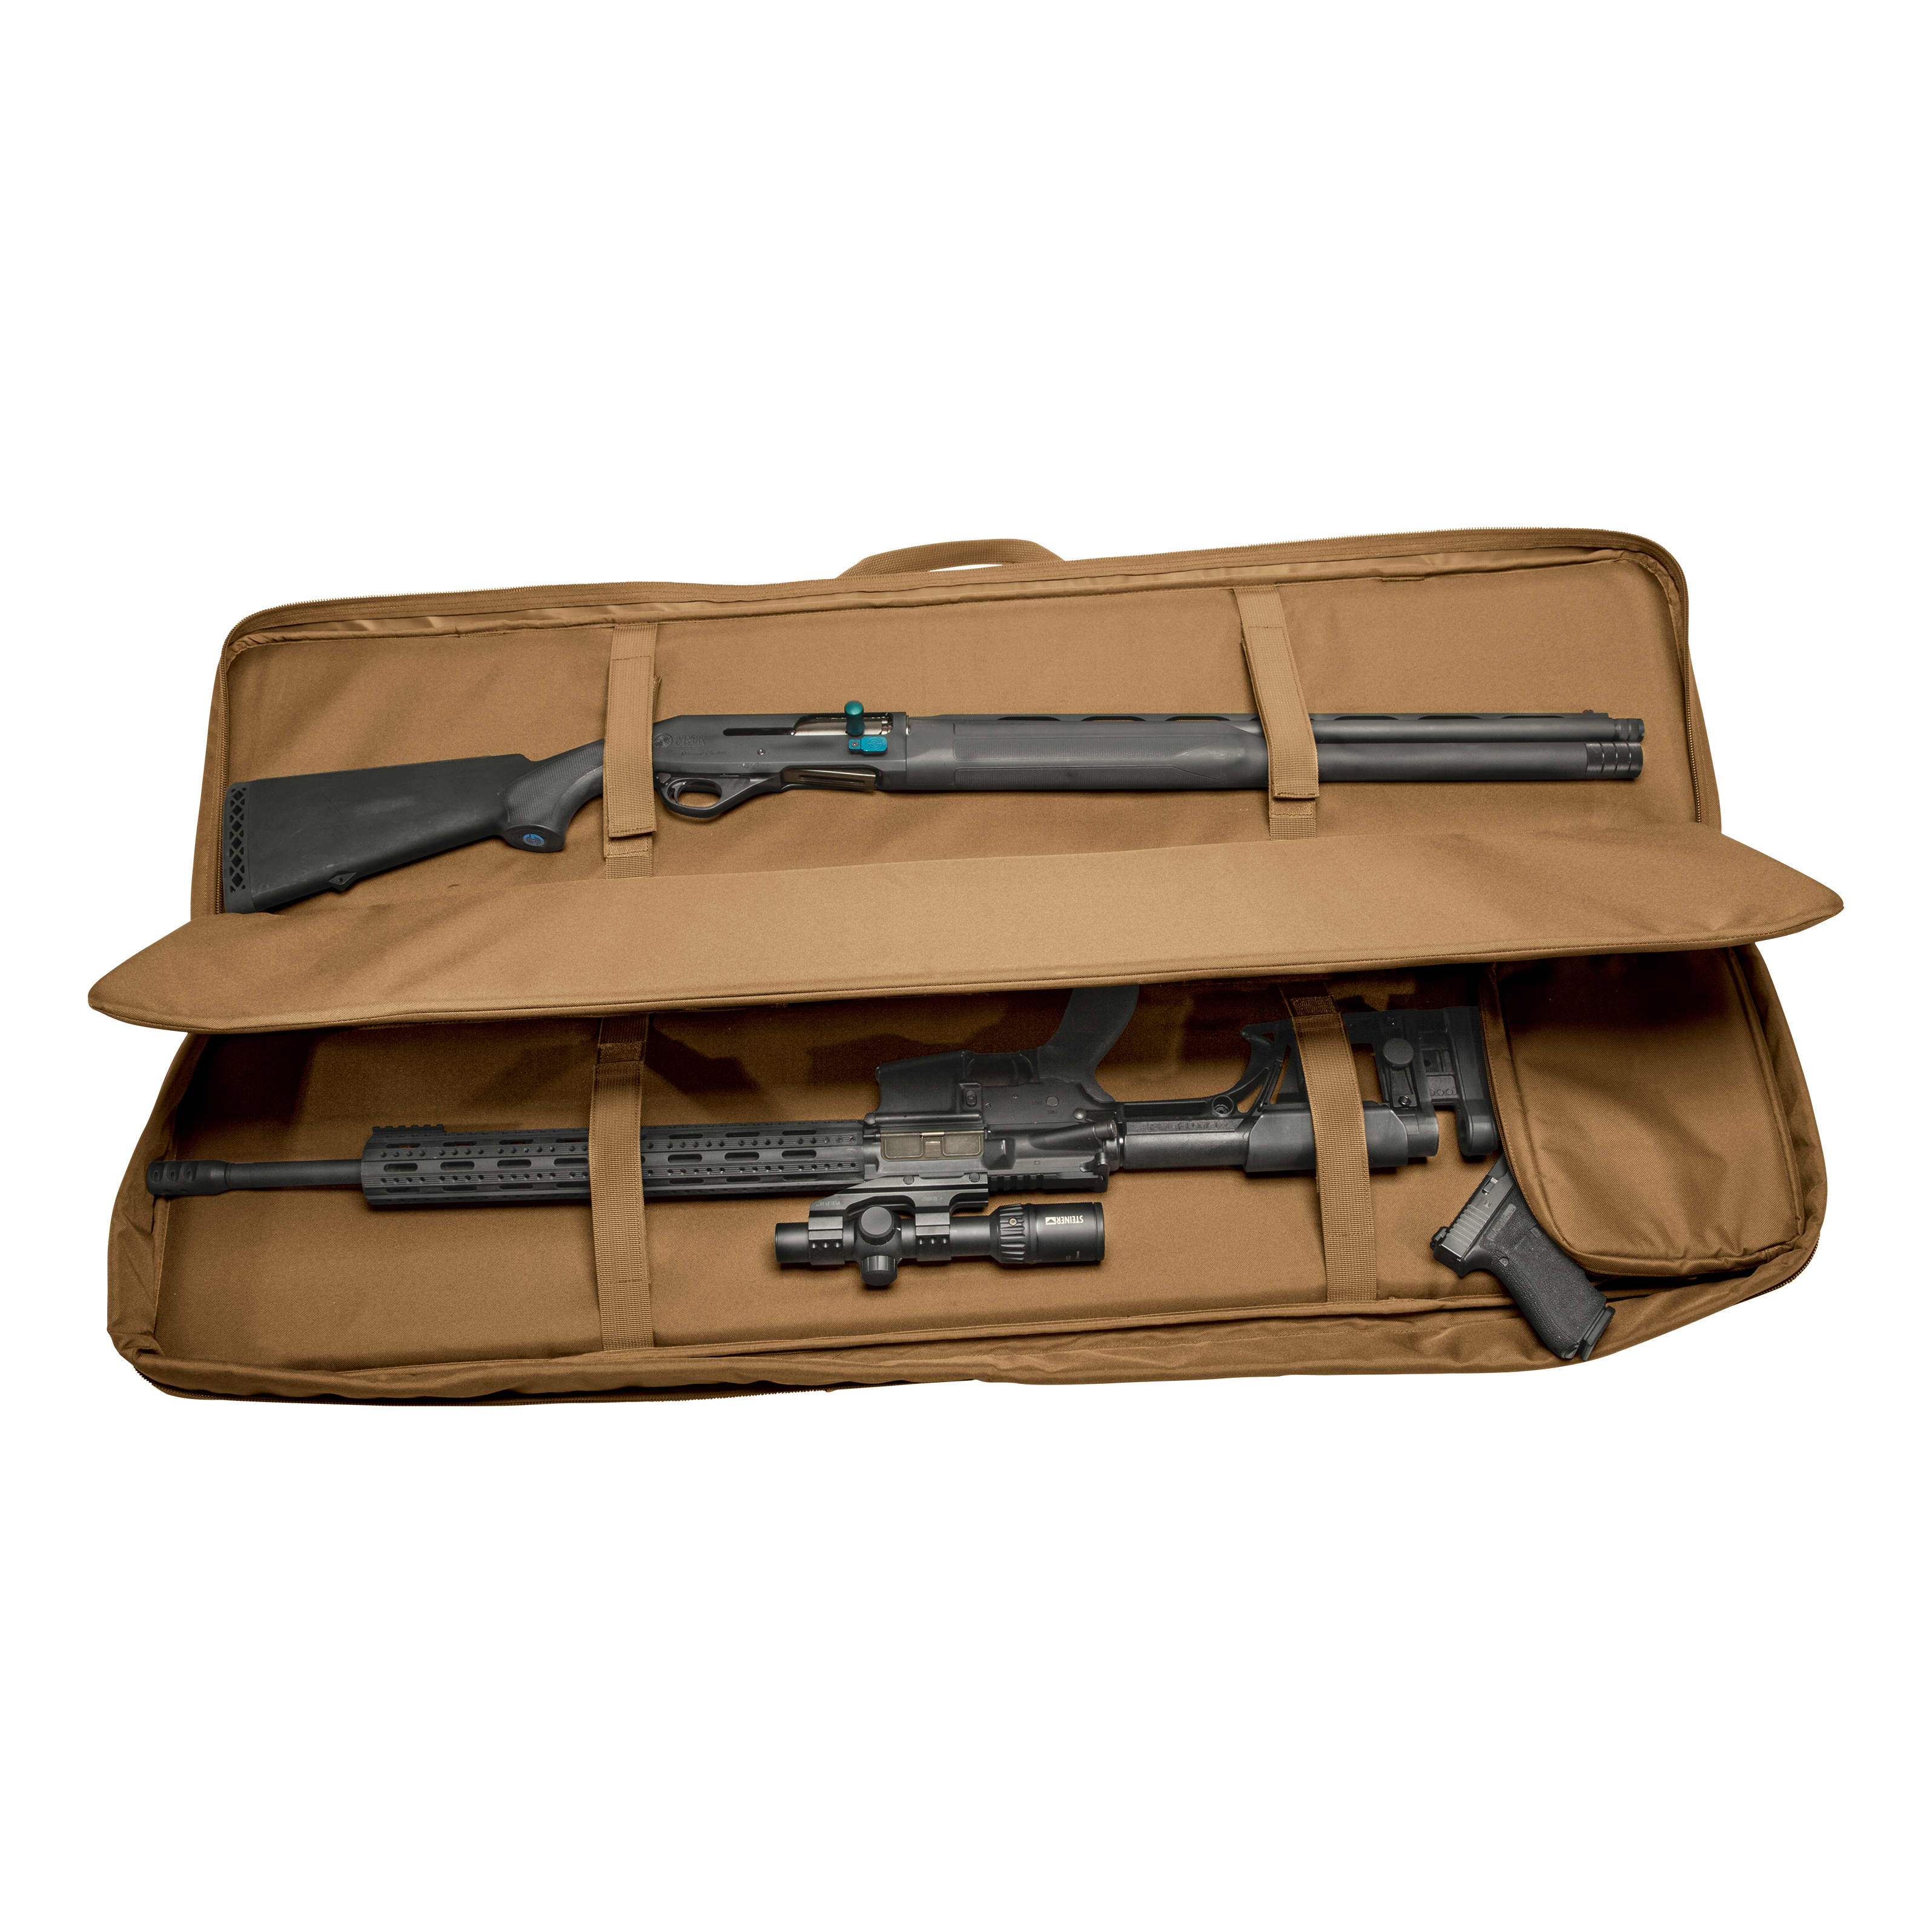 RangeMaxx Tactical 3-Gun Case - Open View